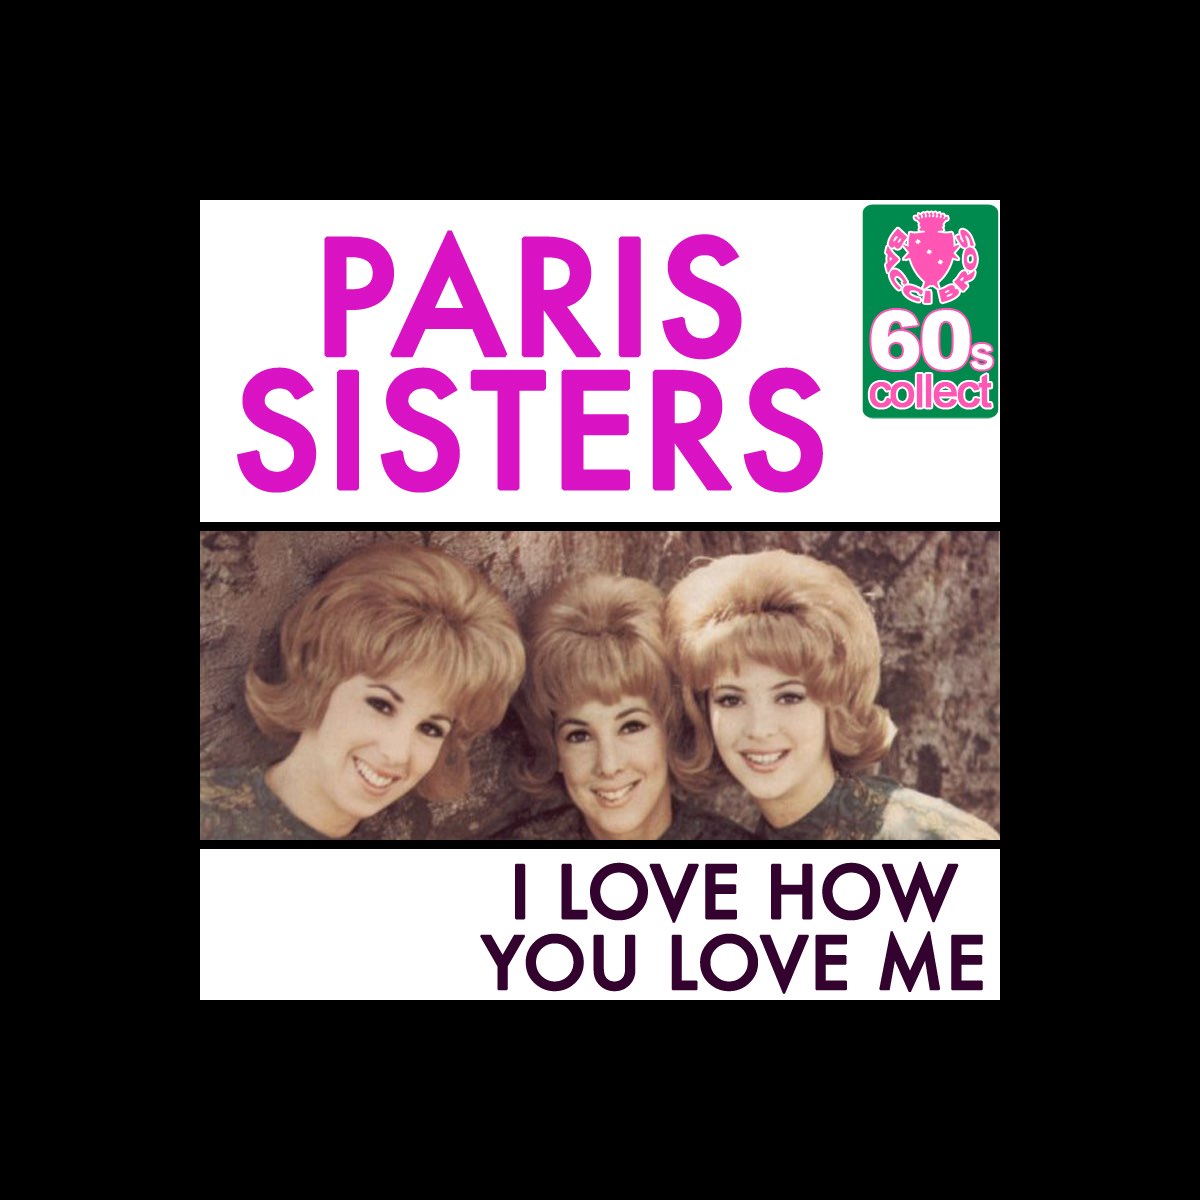 Paris sisters. The Paris sisters. Группе Paris sisters.